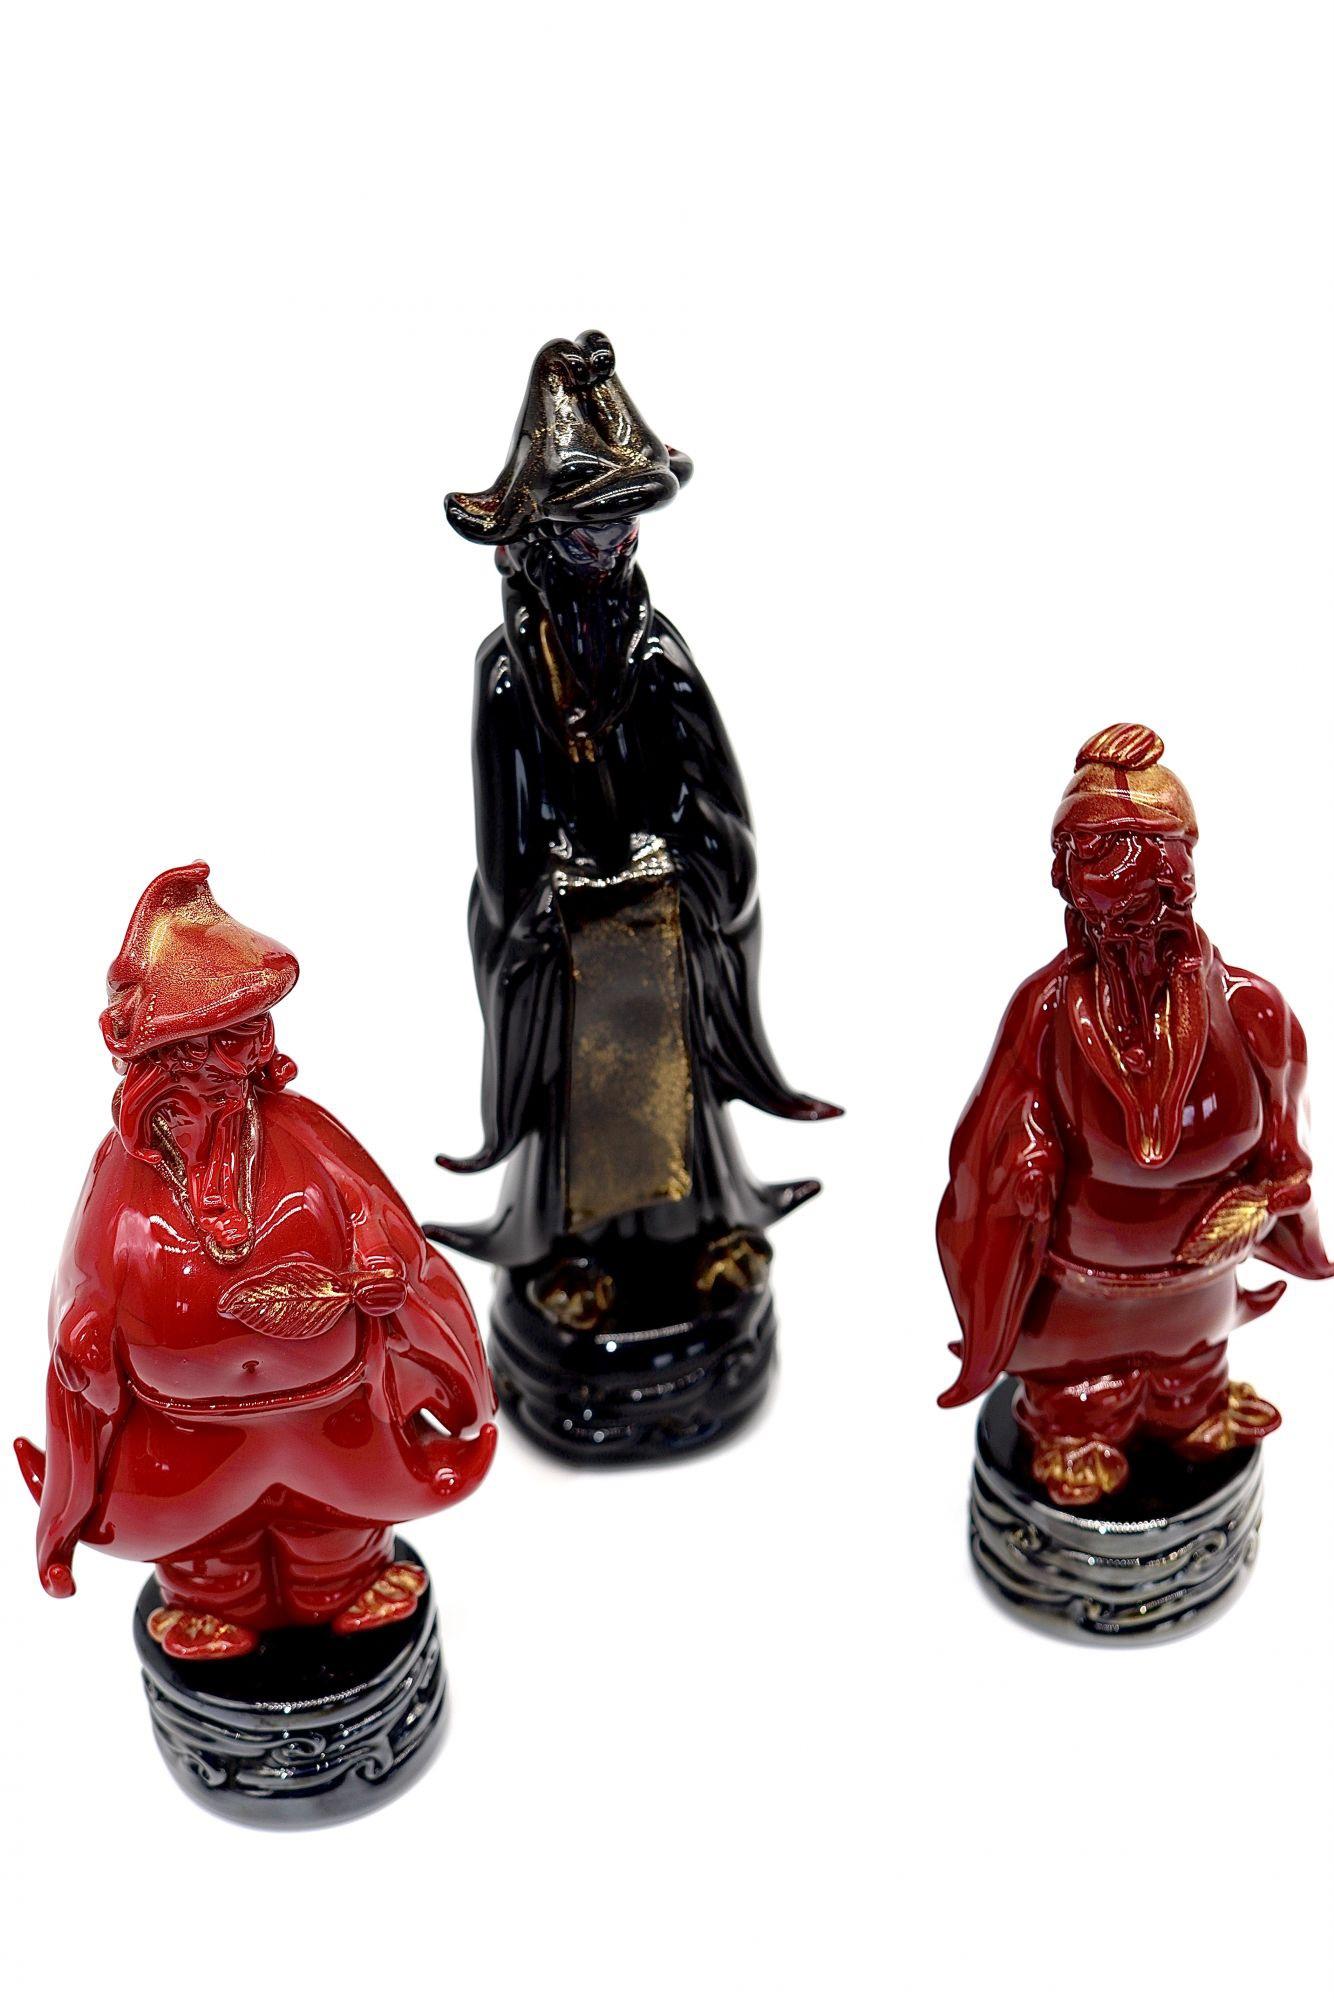 Italien (Vénitien) Groupe de 3 figurines orientales rares, incroyablement détaillées et raffinées, 3 mâles : un en verre à pâtes corail, un autre en verre bordeaux et le troisième en verre noir. Posés sur une base ronde noire à motif de vagues, ils